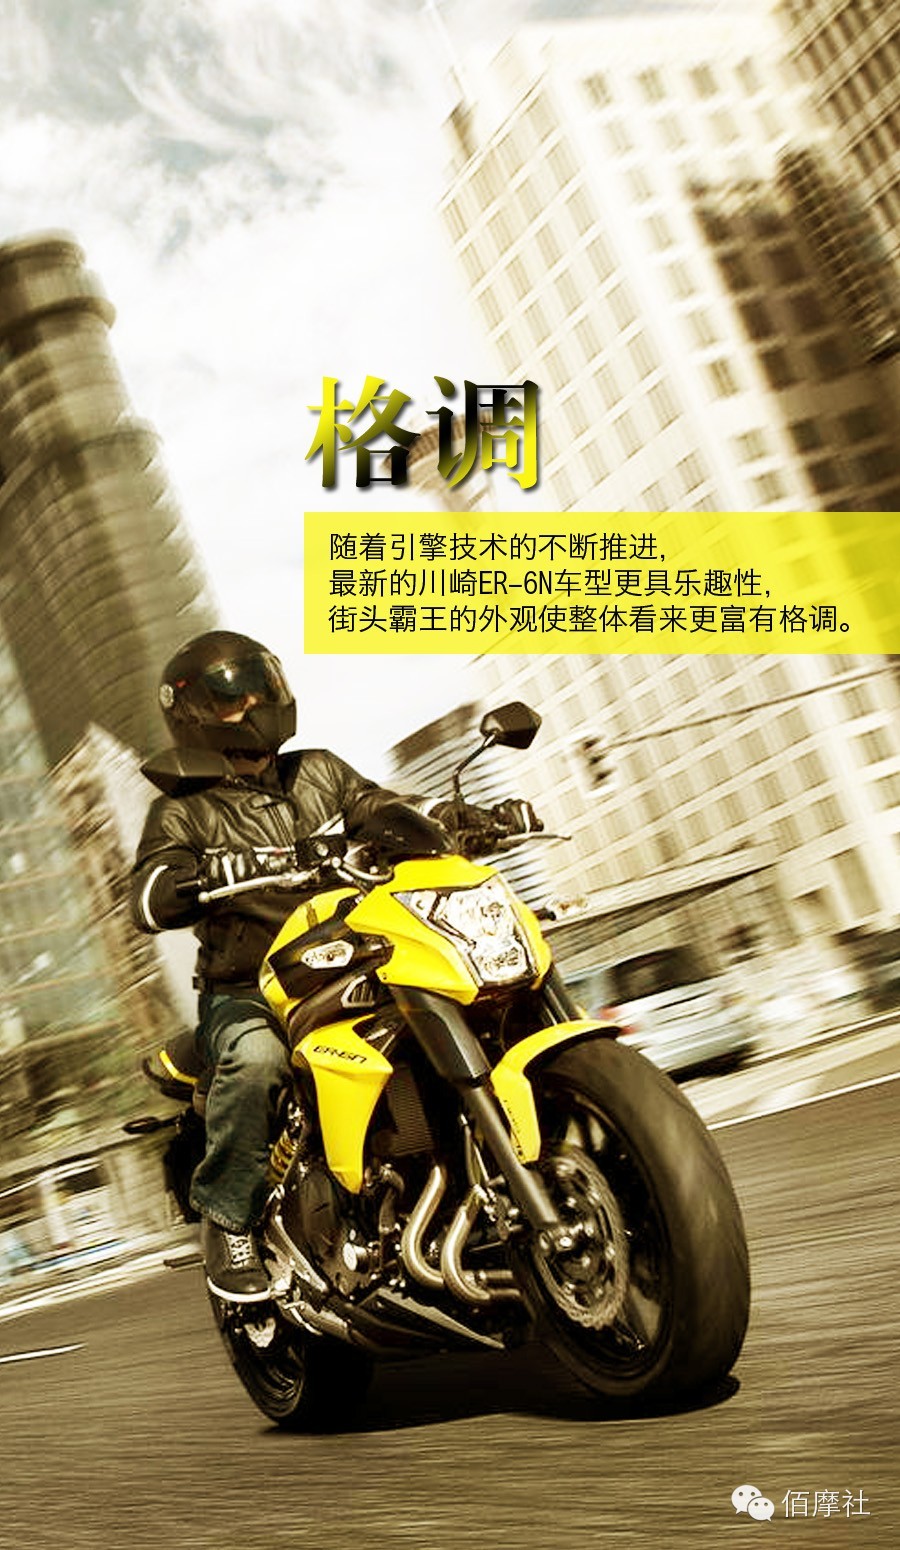 极具诱惑力的川崎ER-6N摩托车，将乐趣、格调、简约的理念推向世界。